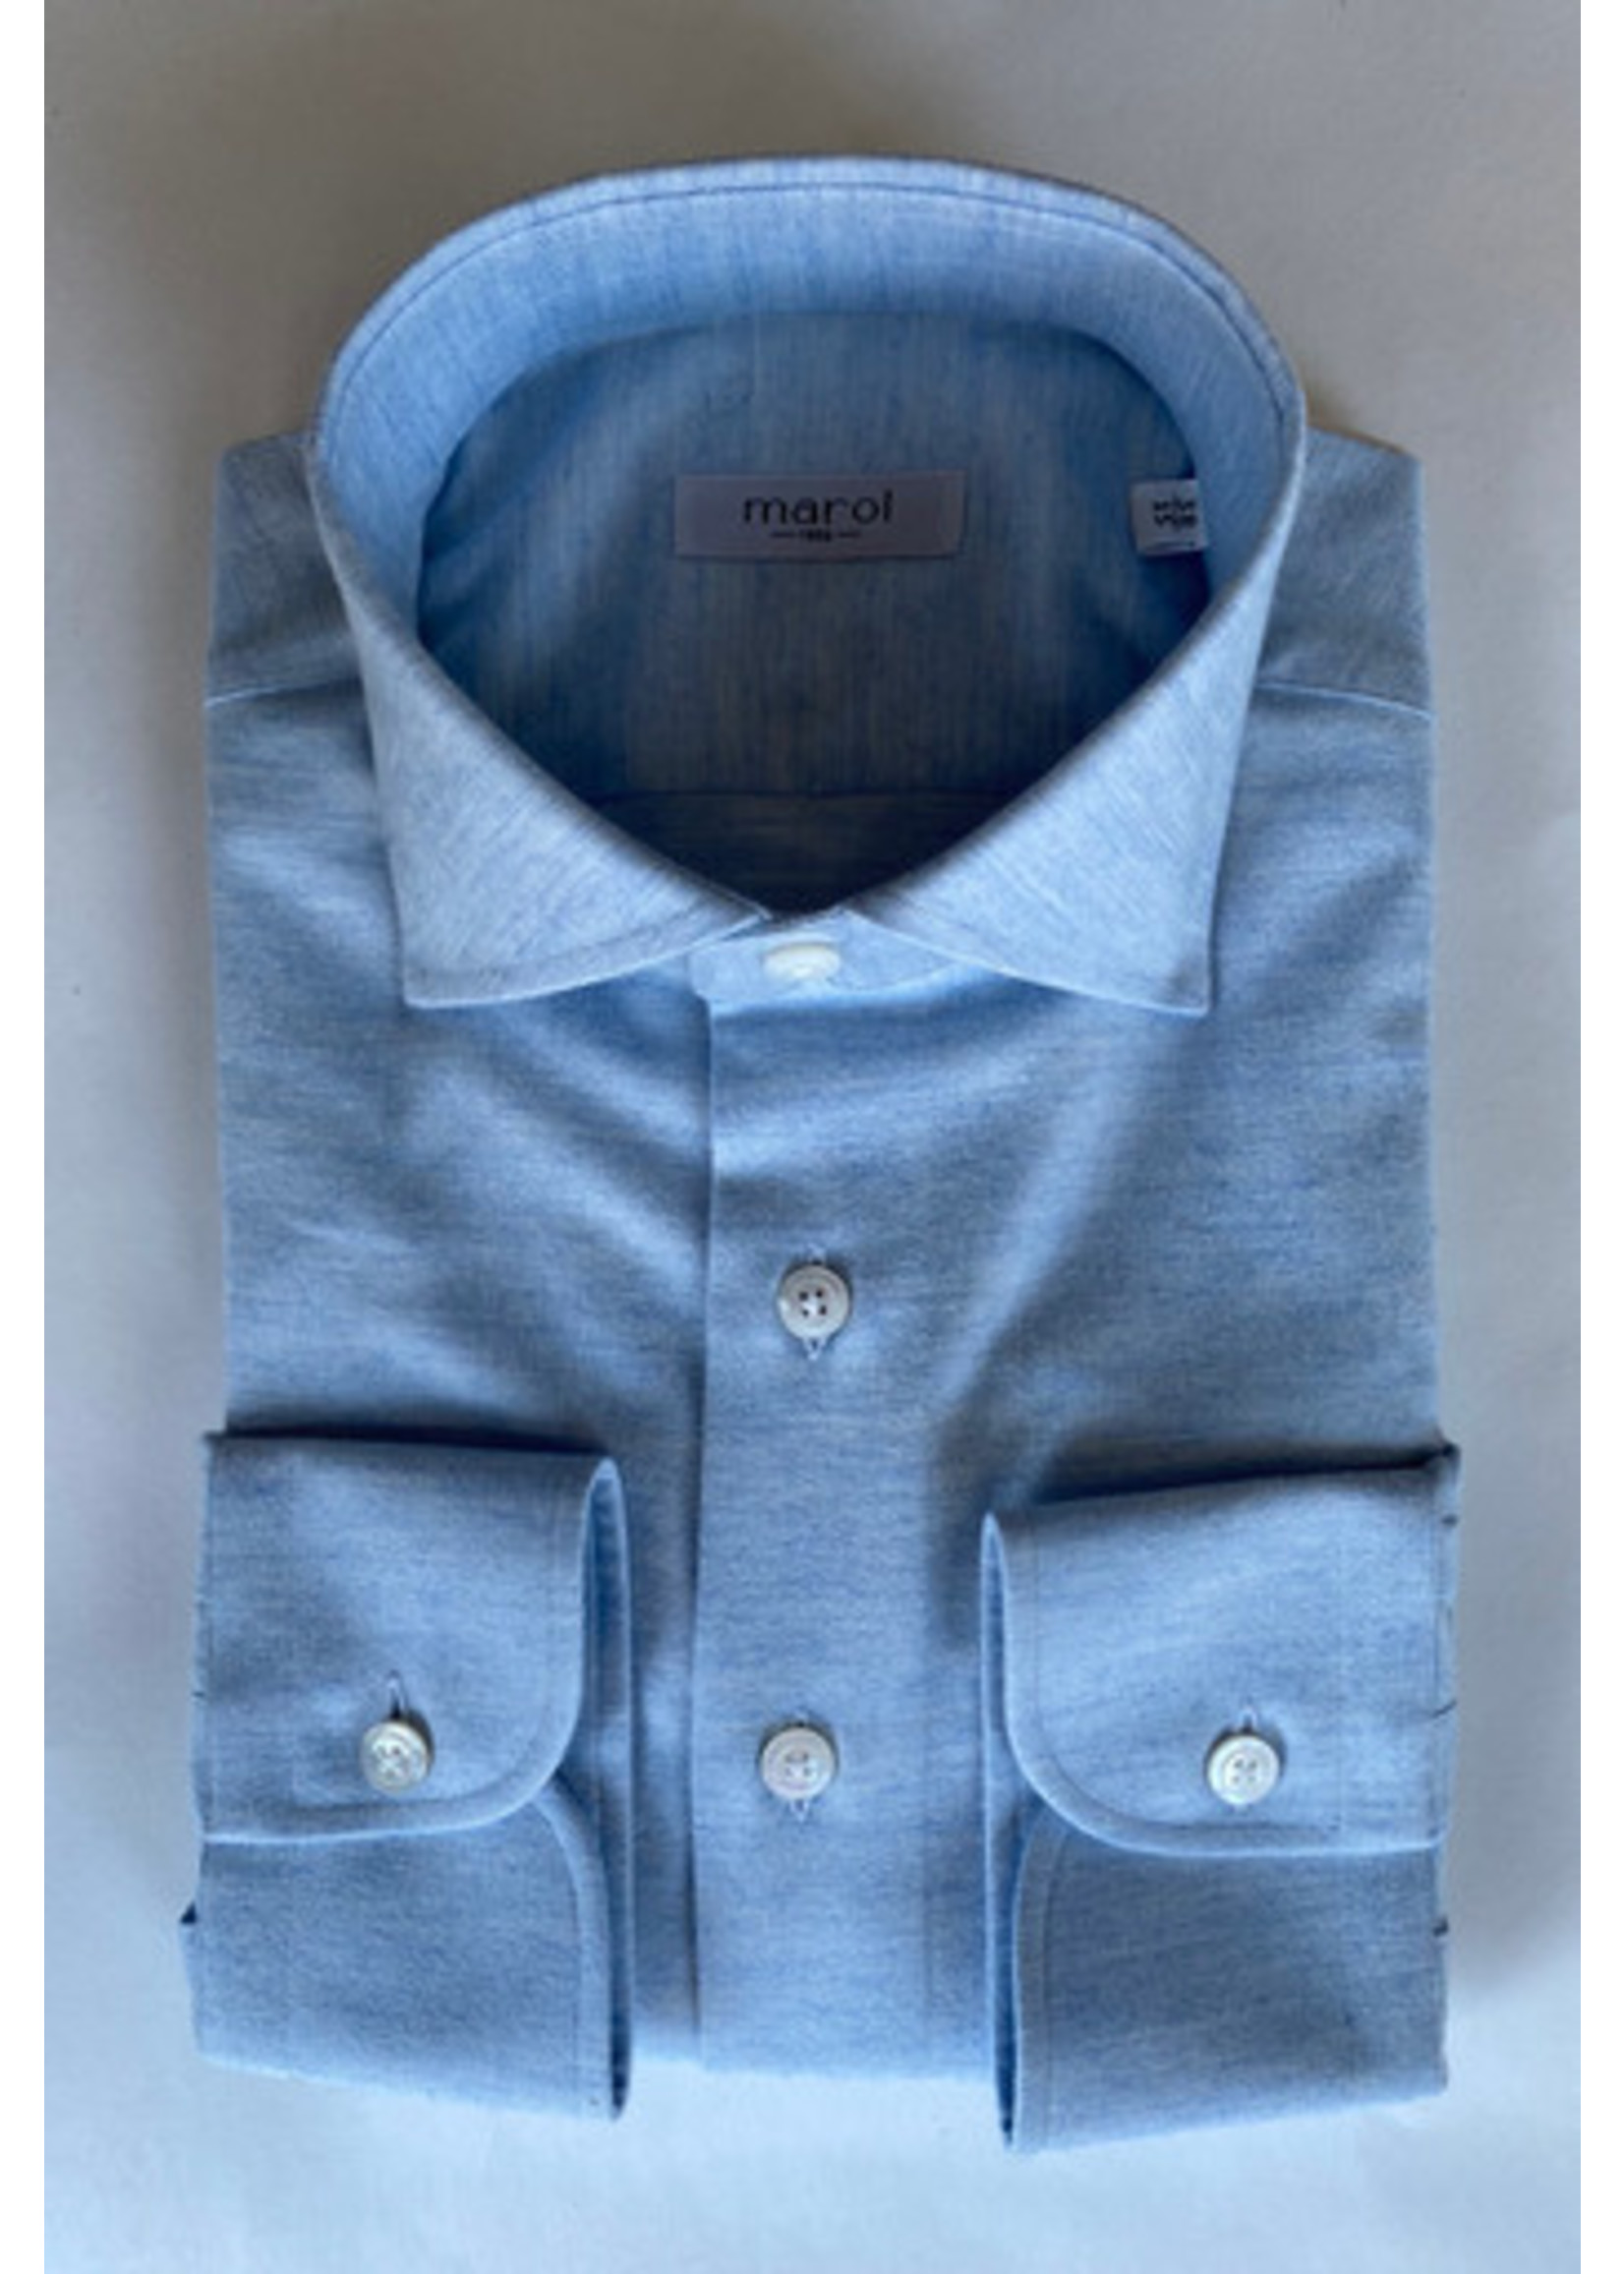 Marol Marol shirt in blue cotton flannel